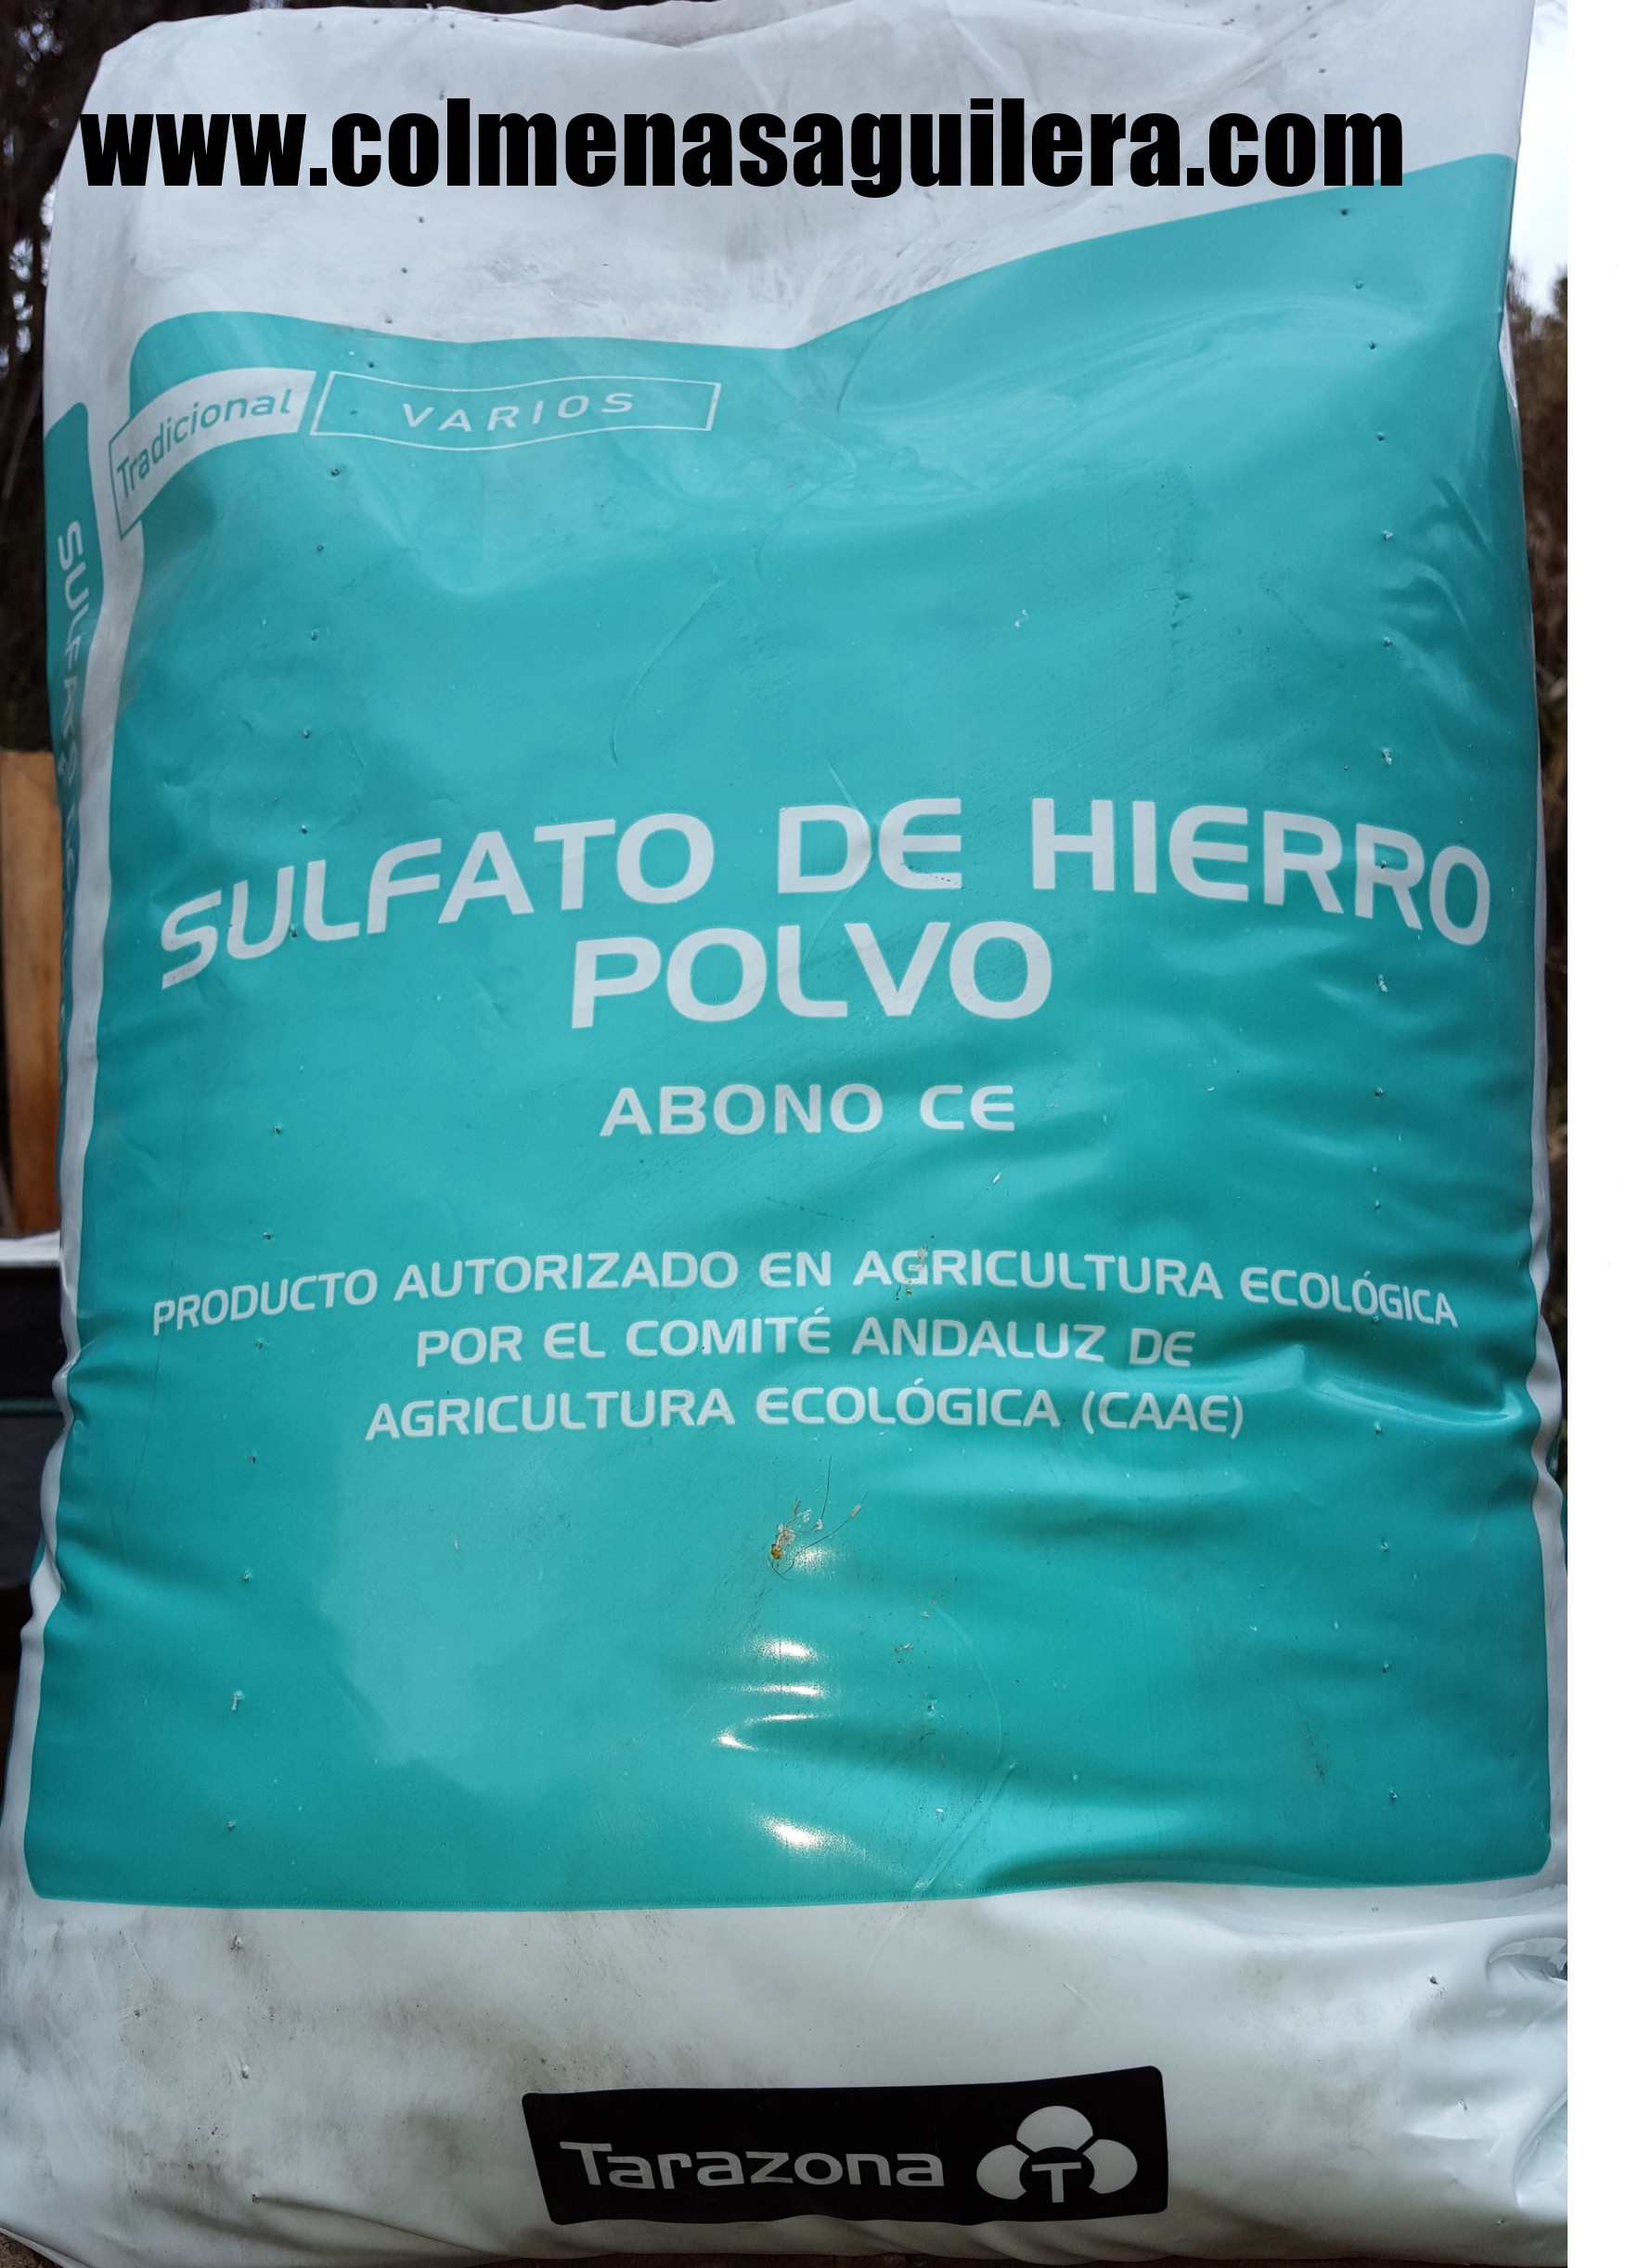 Sulfato de Hierro envase de 1 kilo.